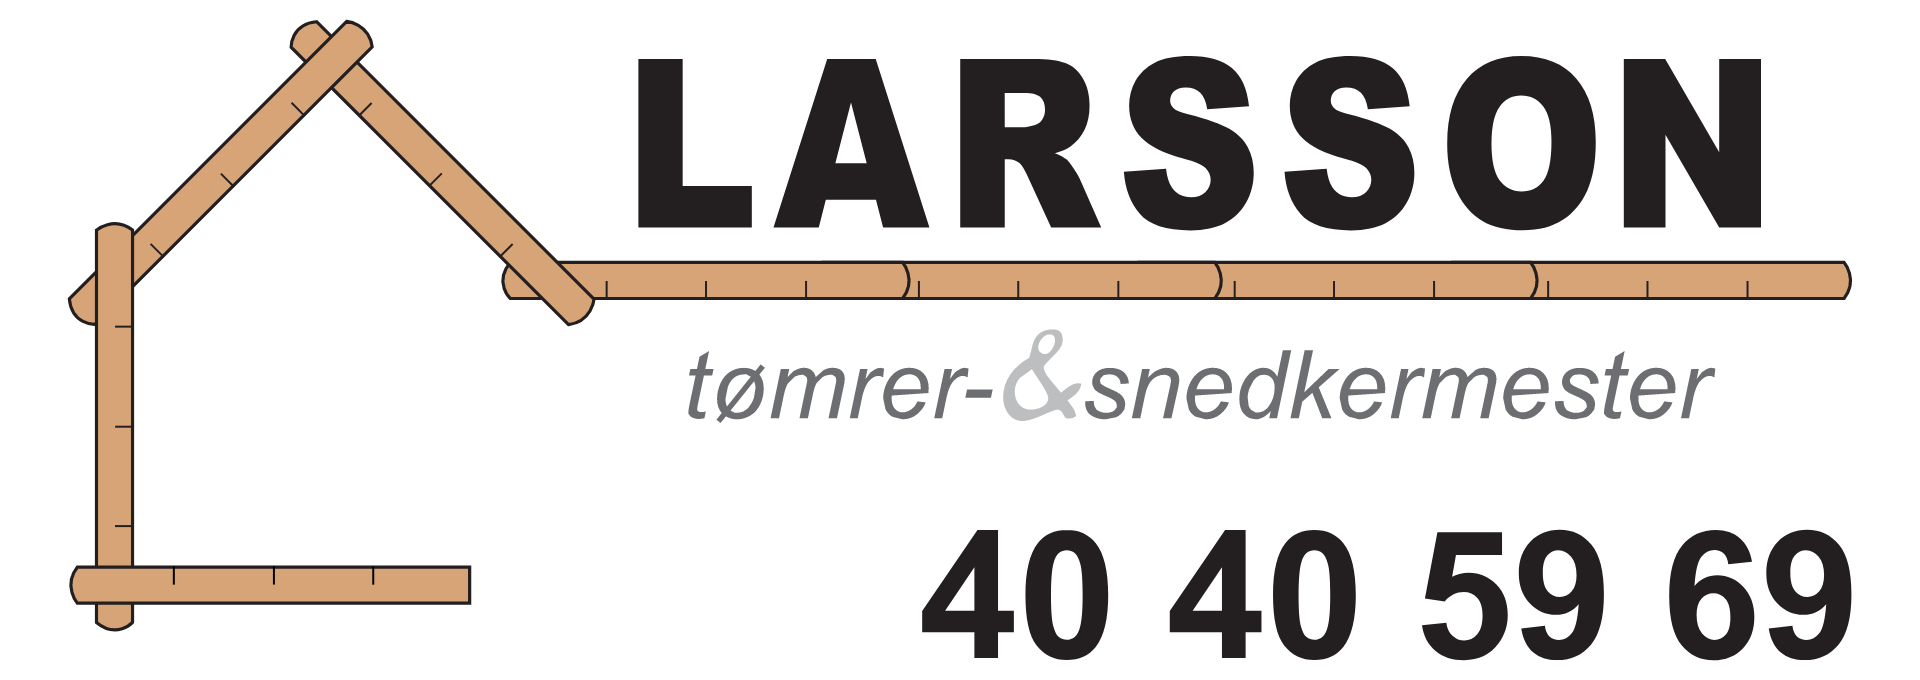 Larsson Tømrer- og snedkermester Aps.